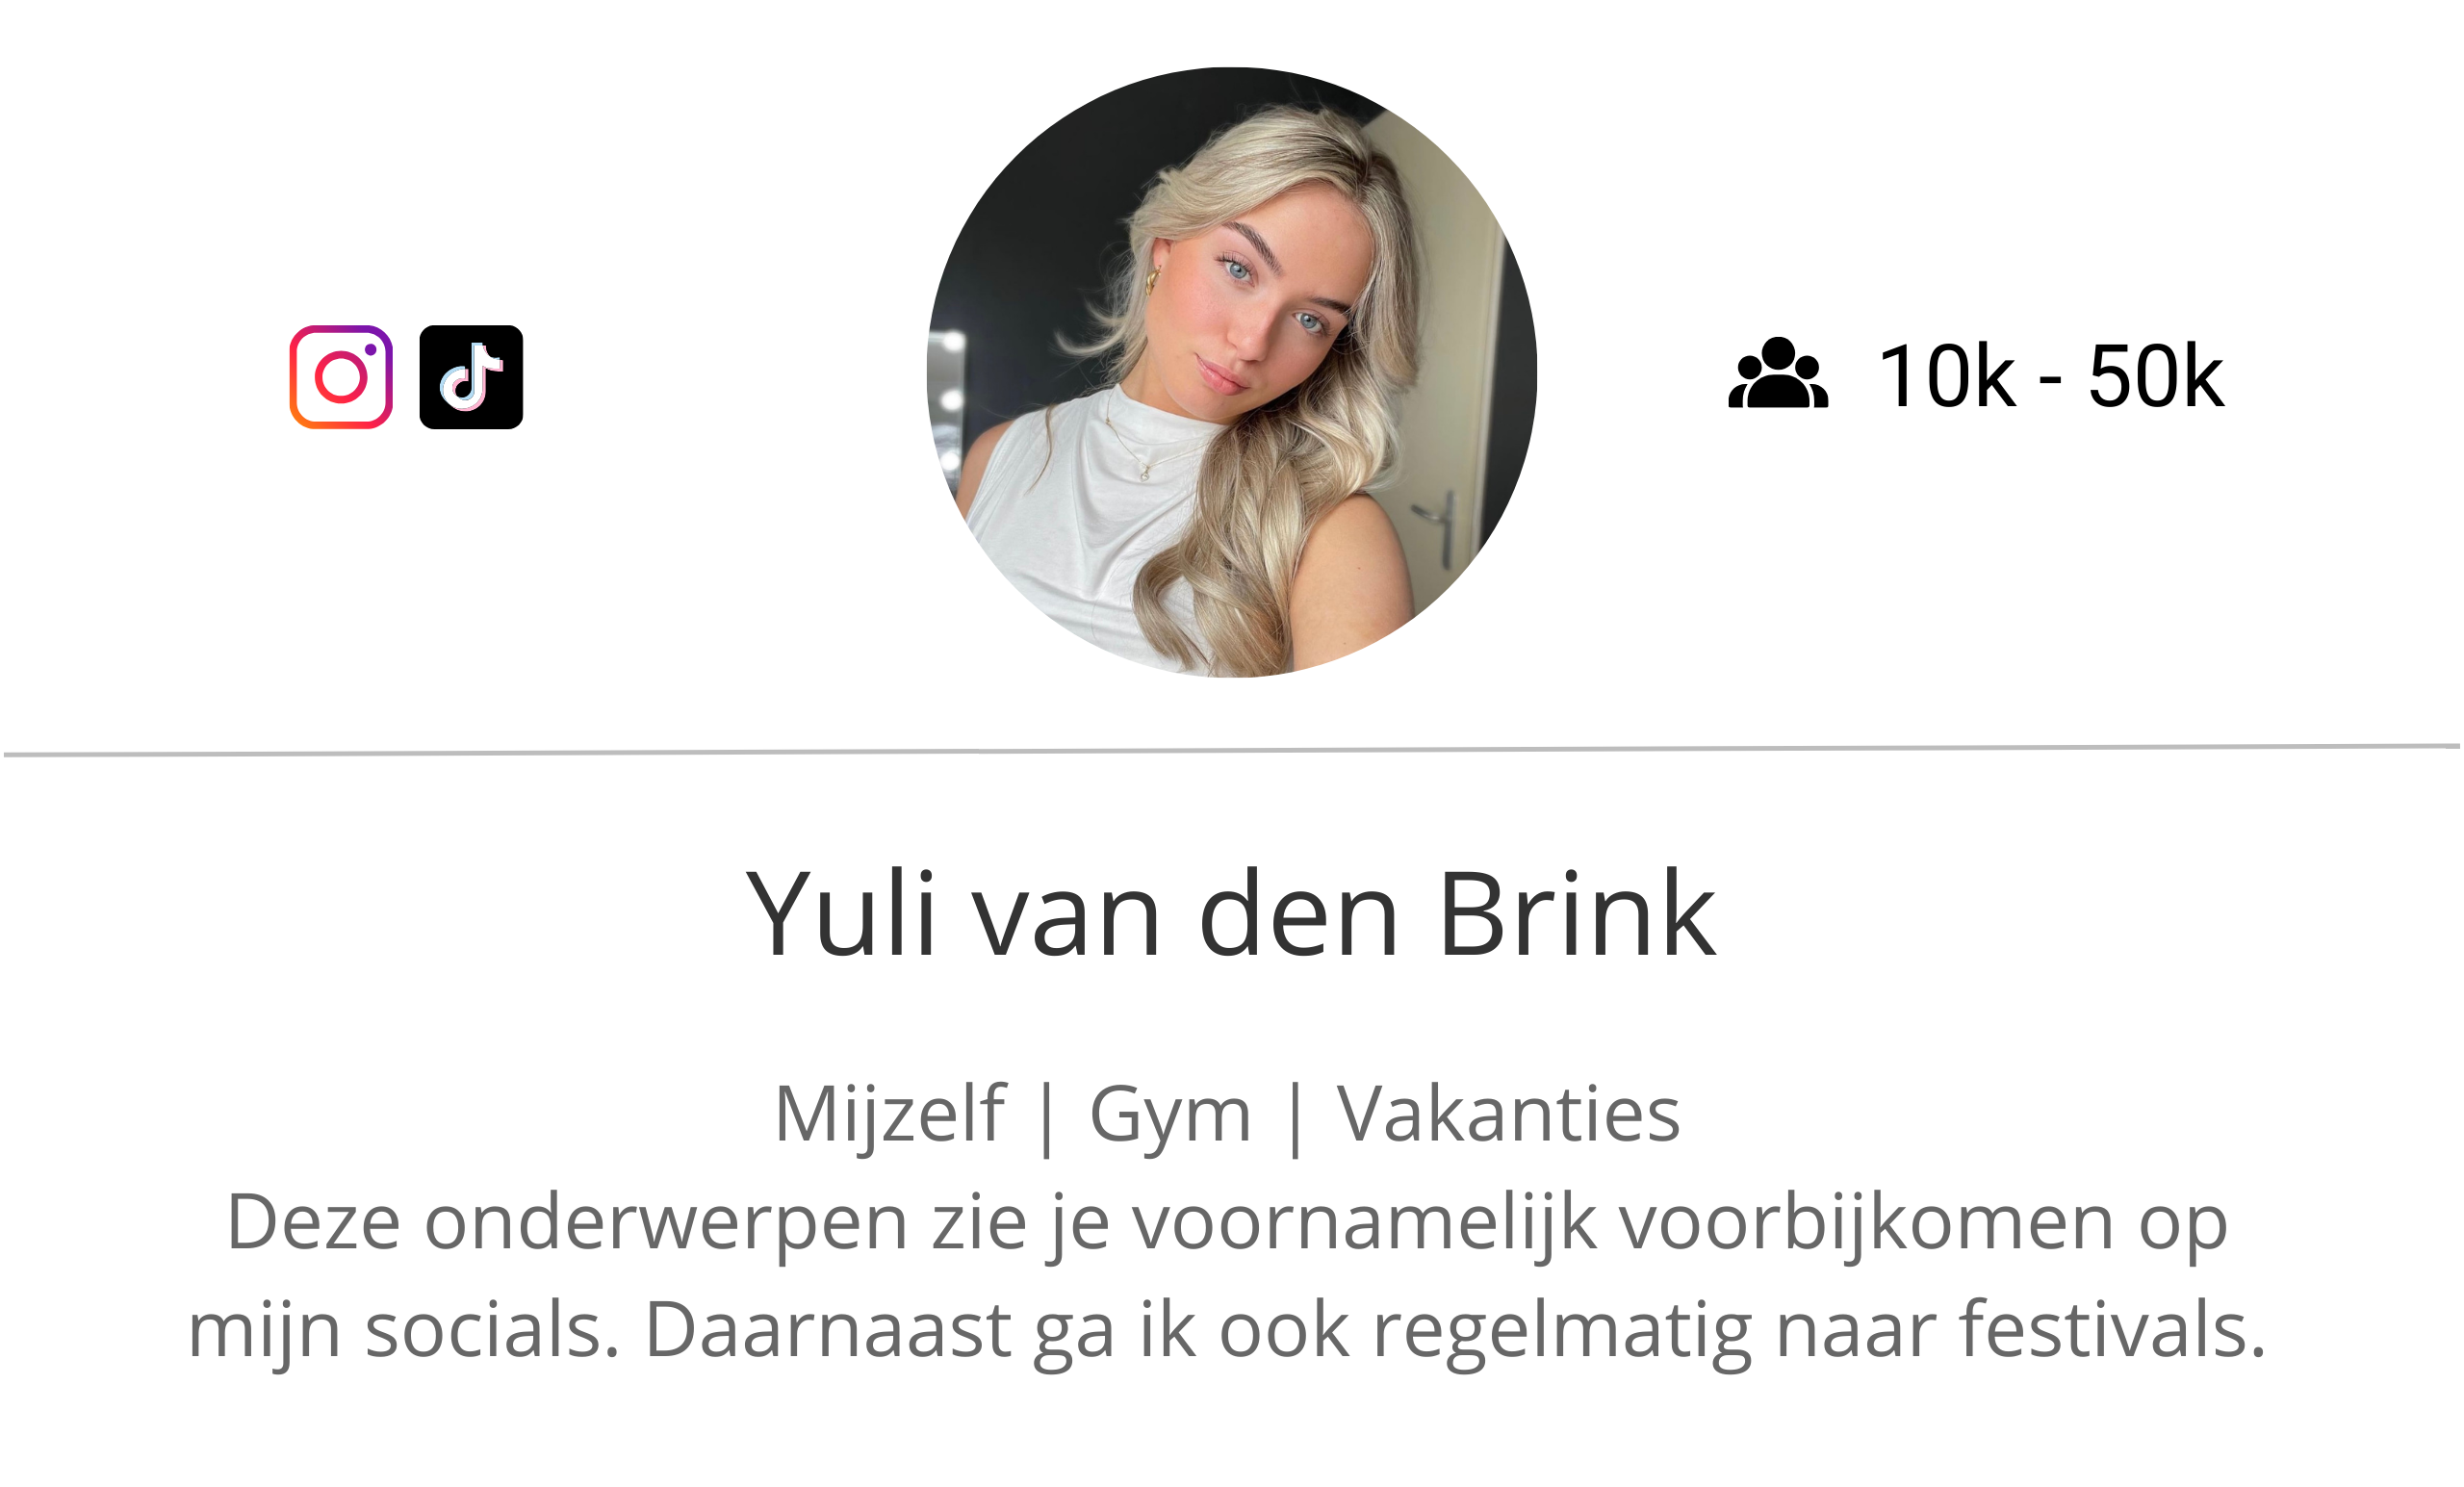 Yuli van den Brink